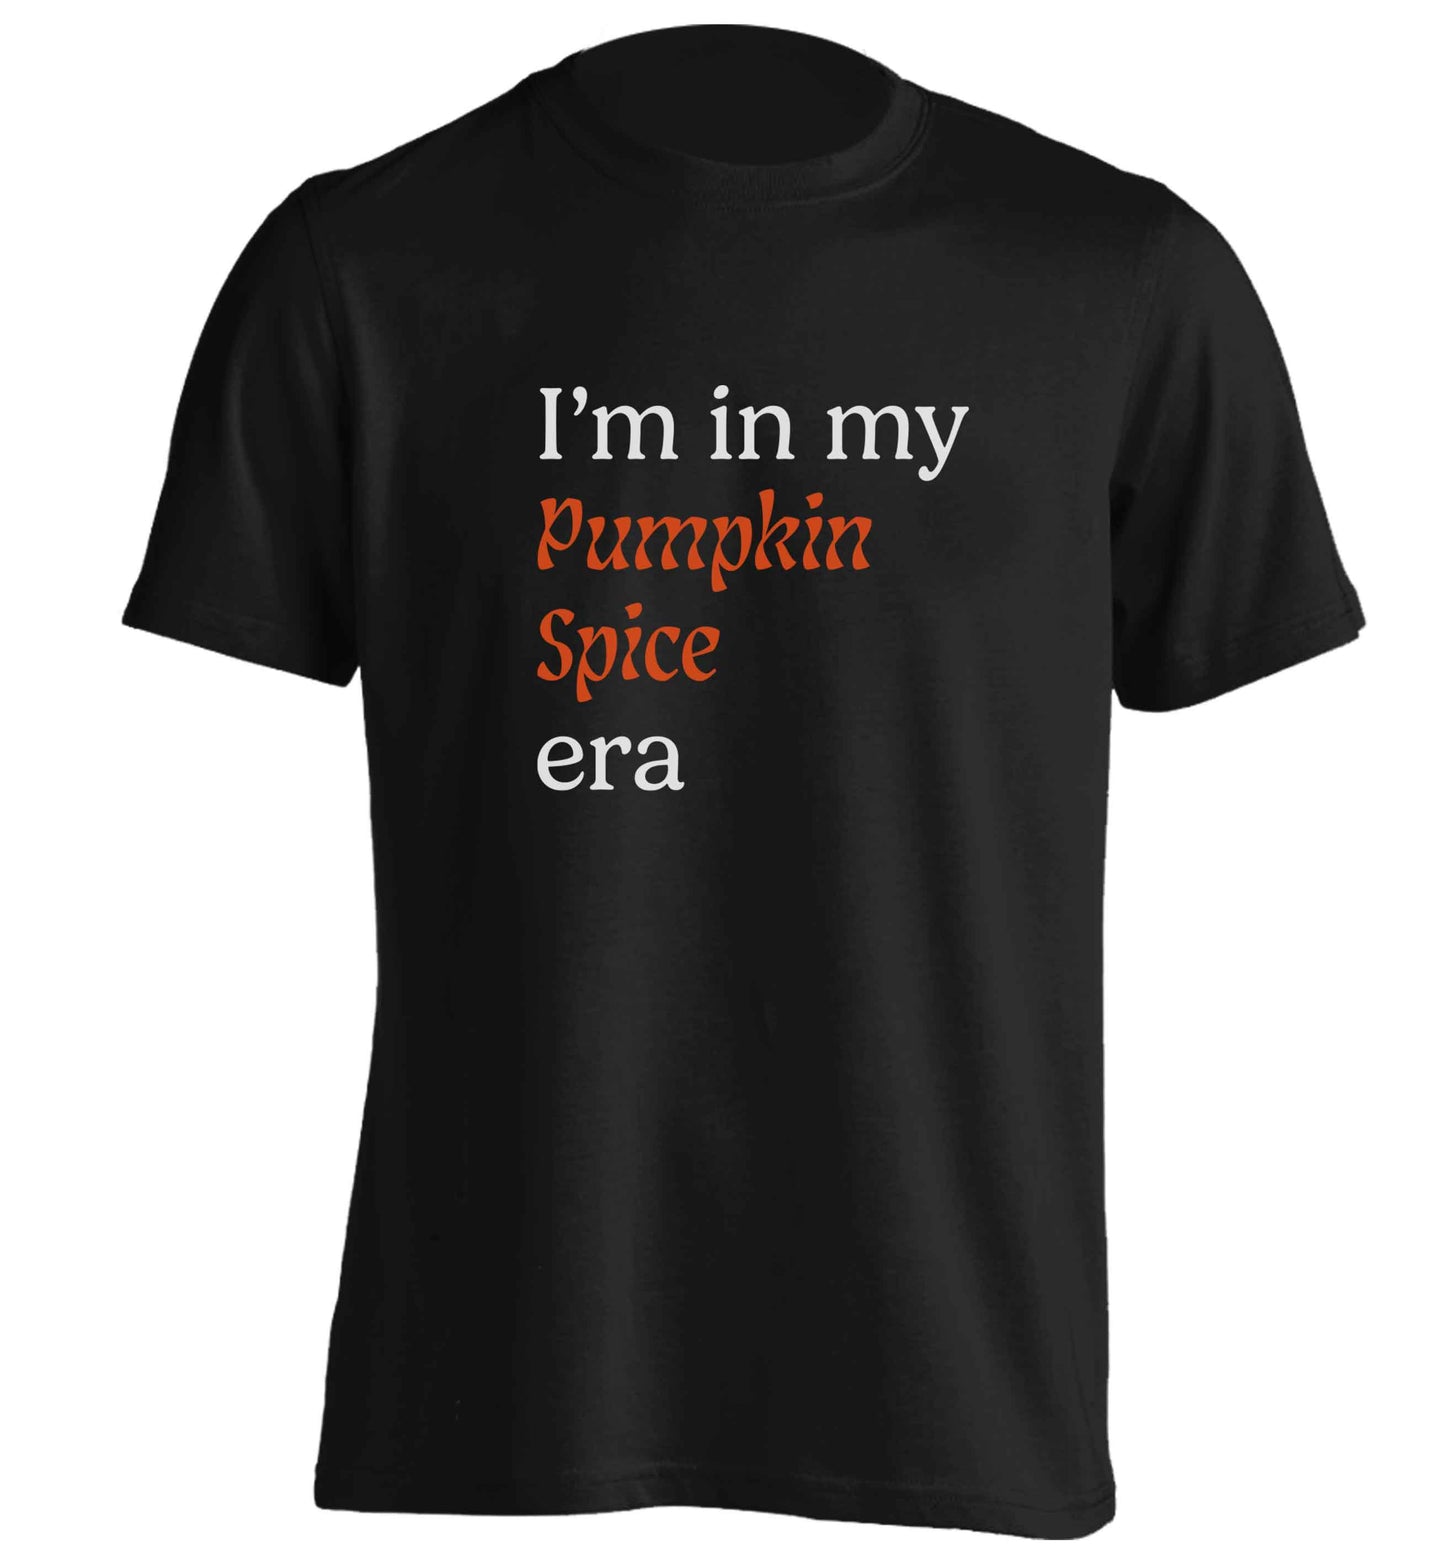 I'm in my pumpkin spice era Kit adults unisex black Tshirt 2XL